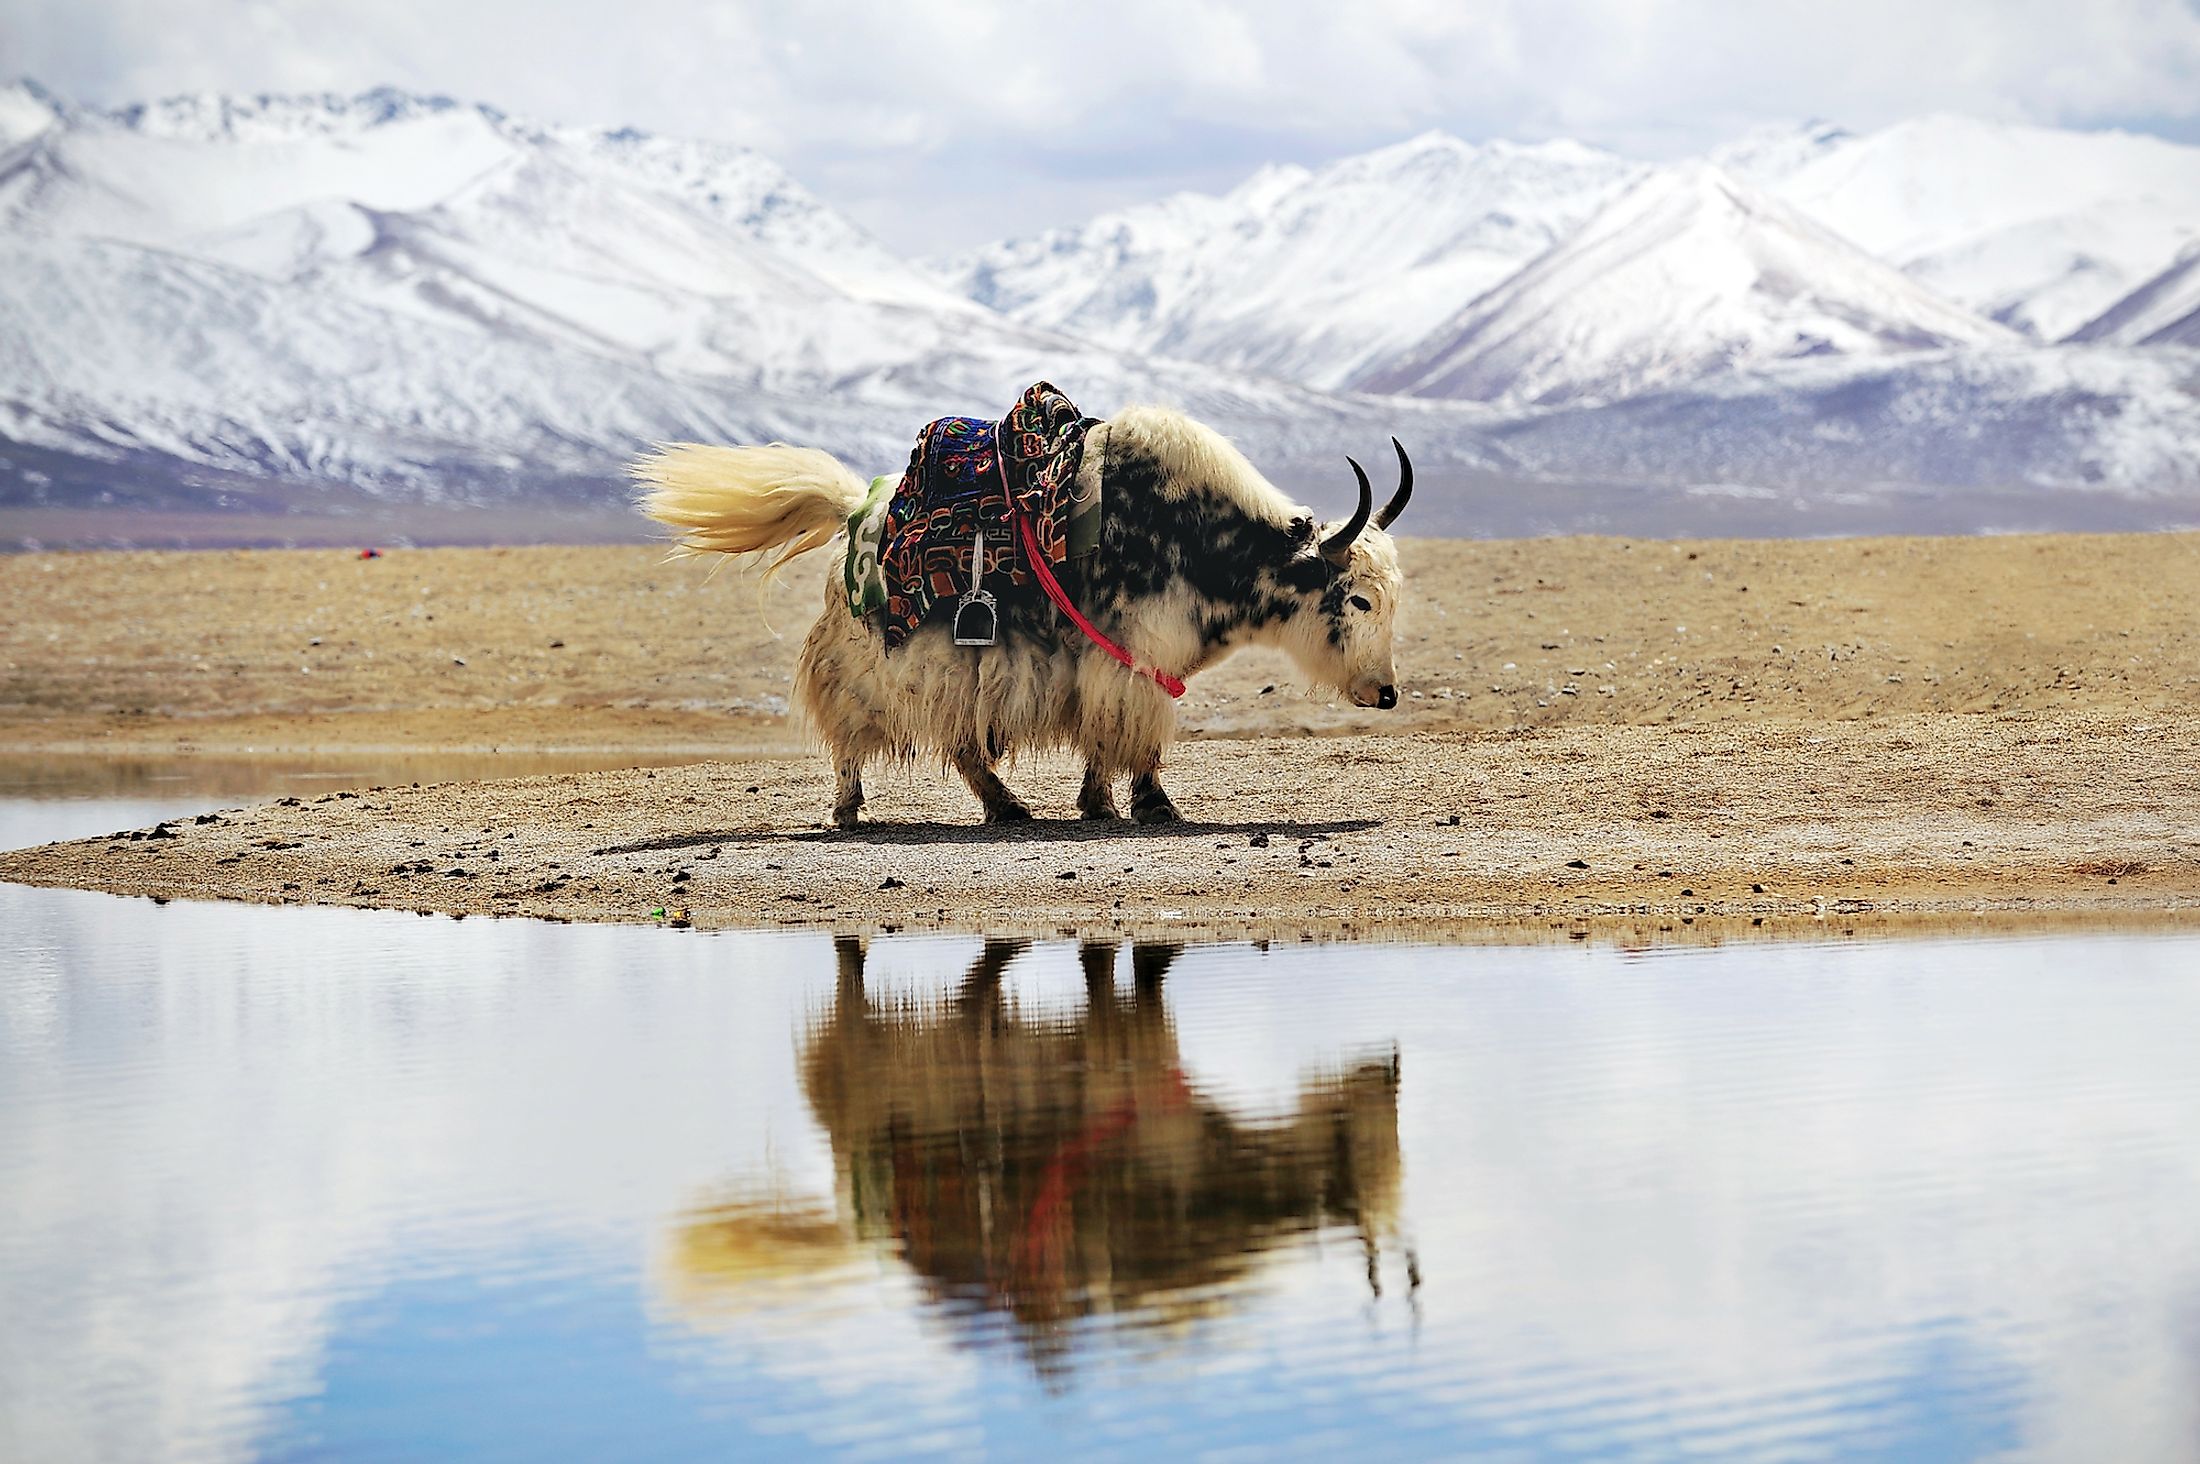 A yak on the Tibetan Plateau